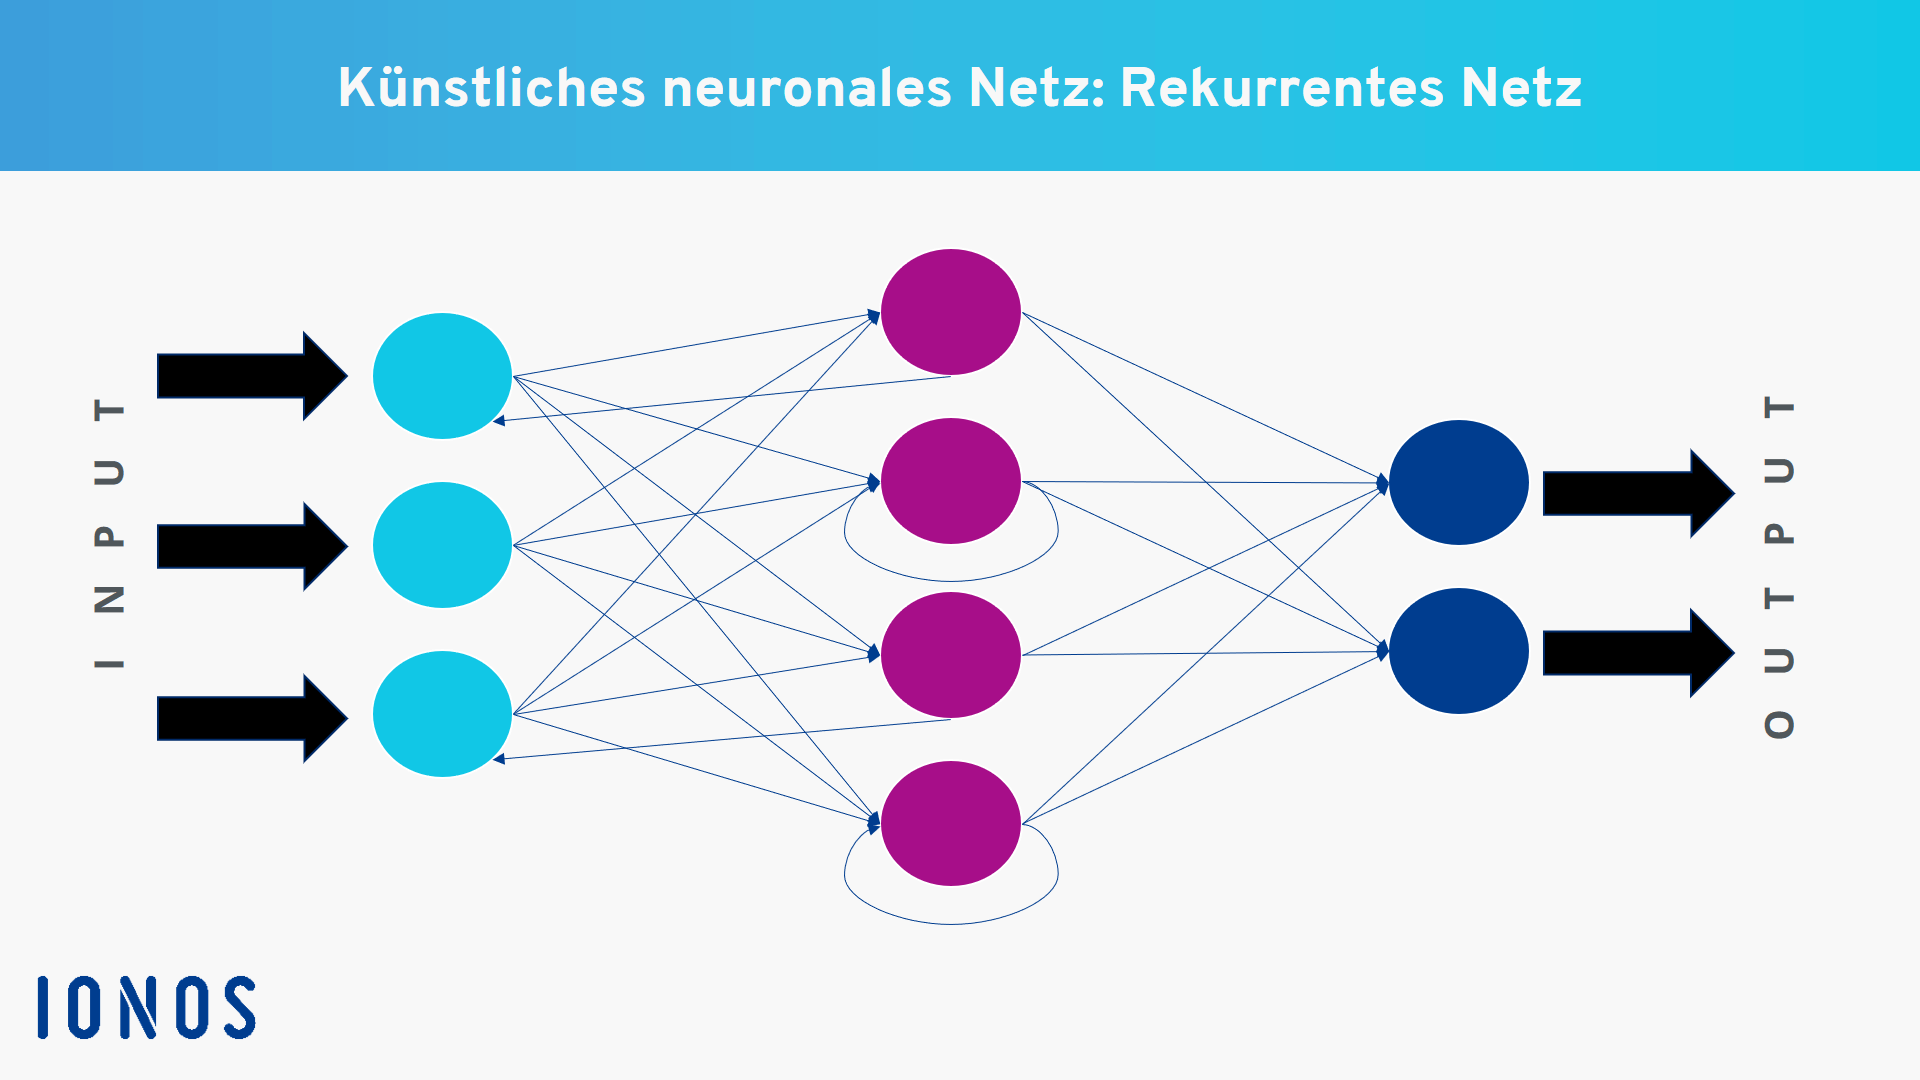 Beispiel für ein künstliches neuronales Netz mit rekurrenter Verschaltung